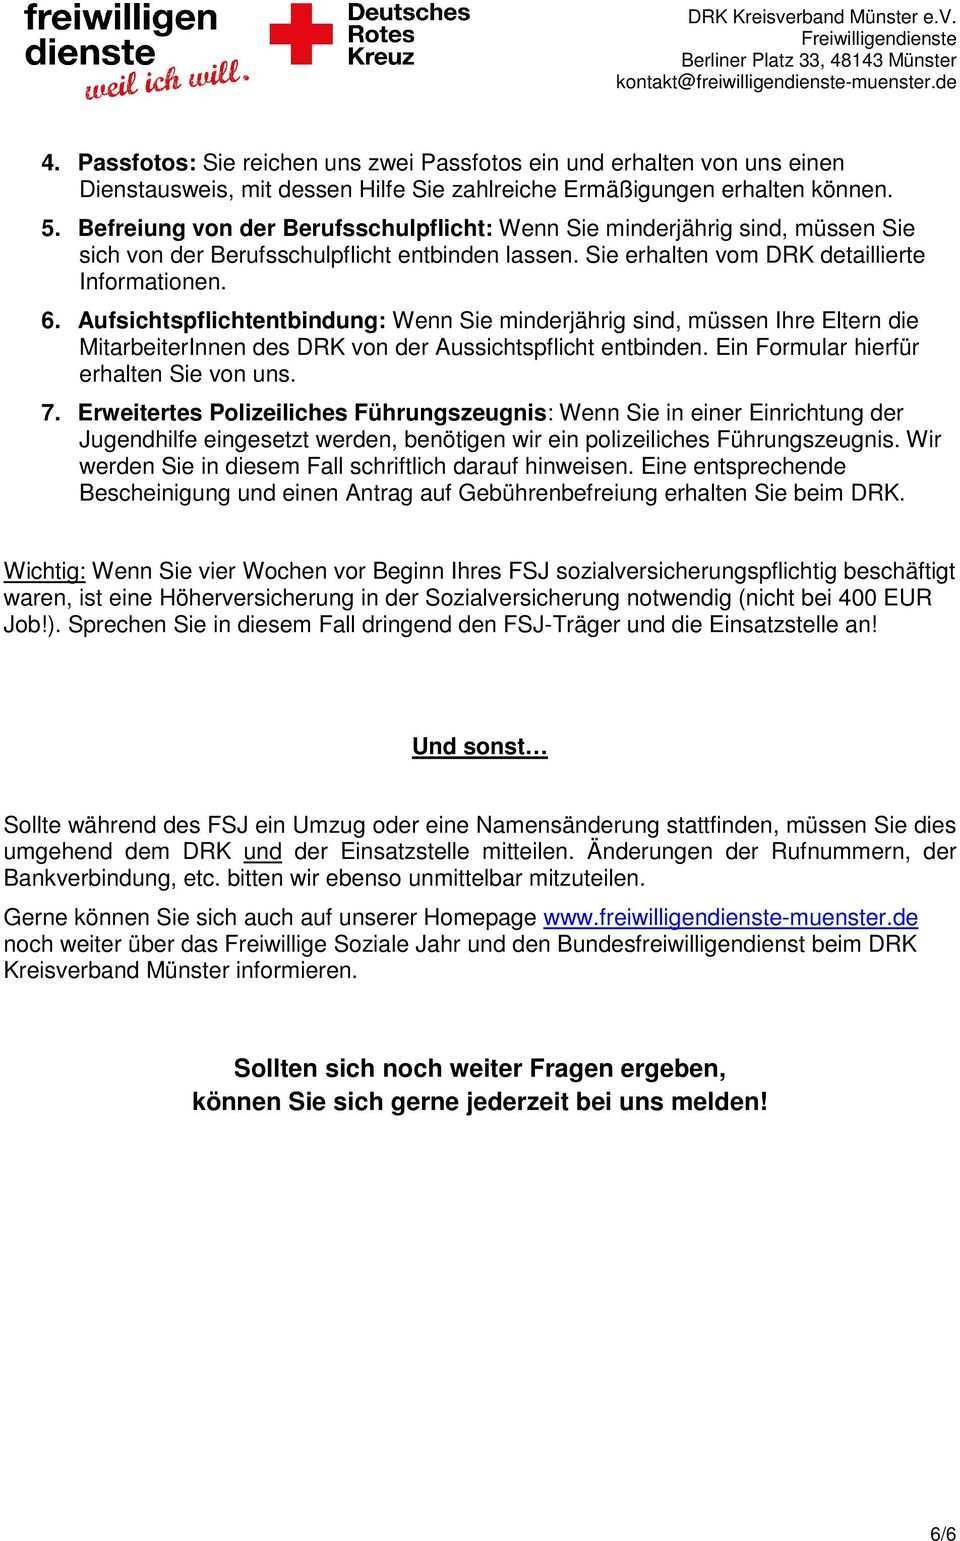 Informationsblatt Freiwilliges Soziales Jahr Fsj Bundesfreiwilligendienst Bfd Pdf Free Download